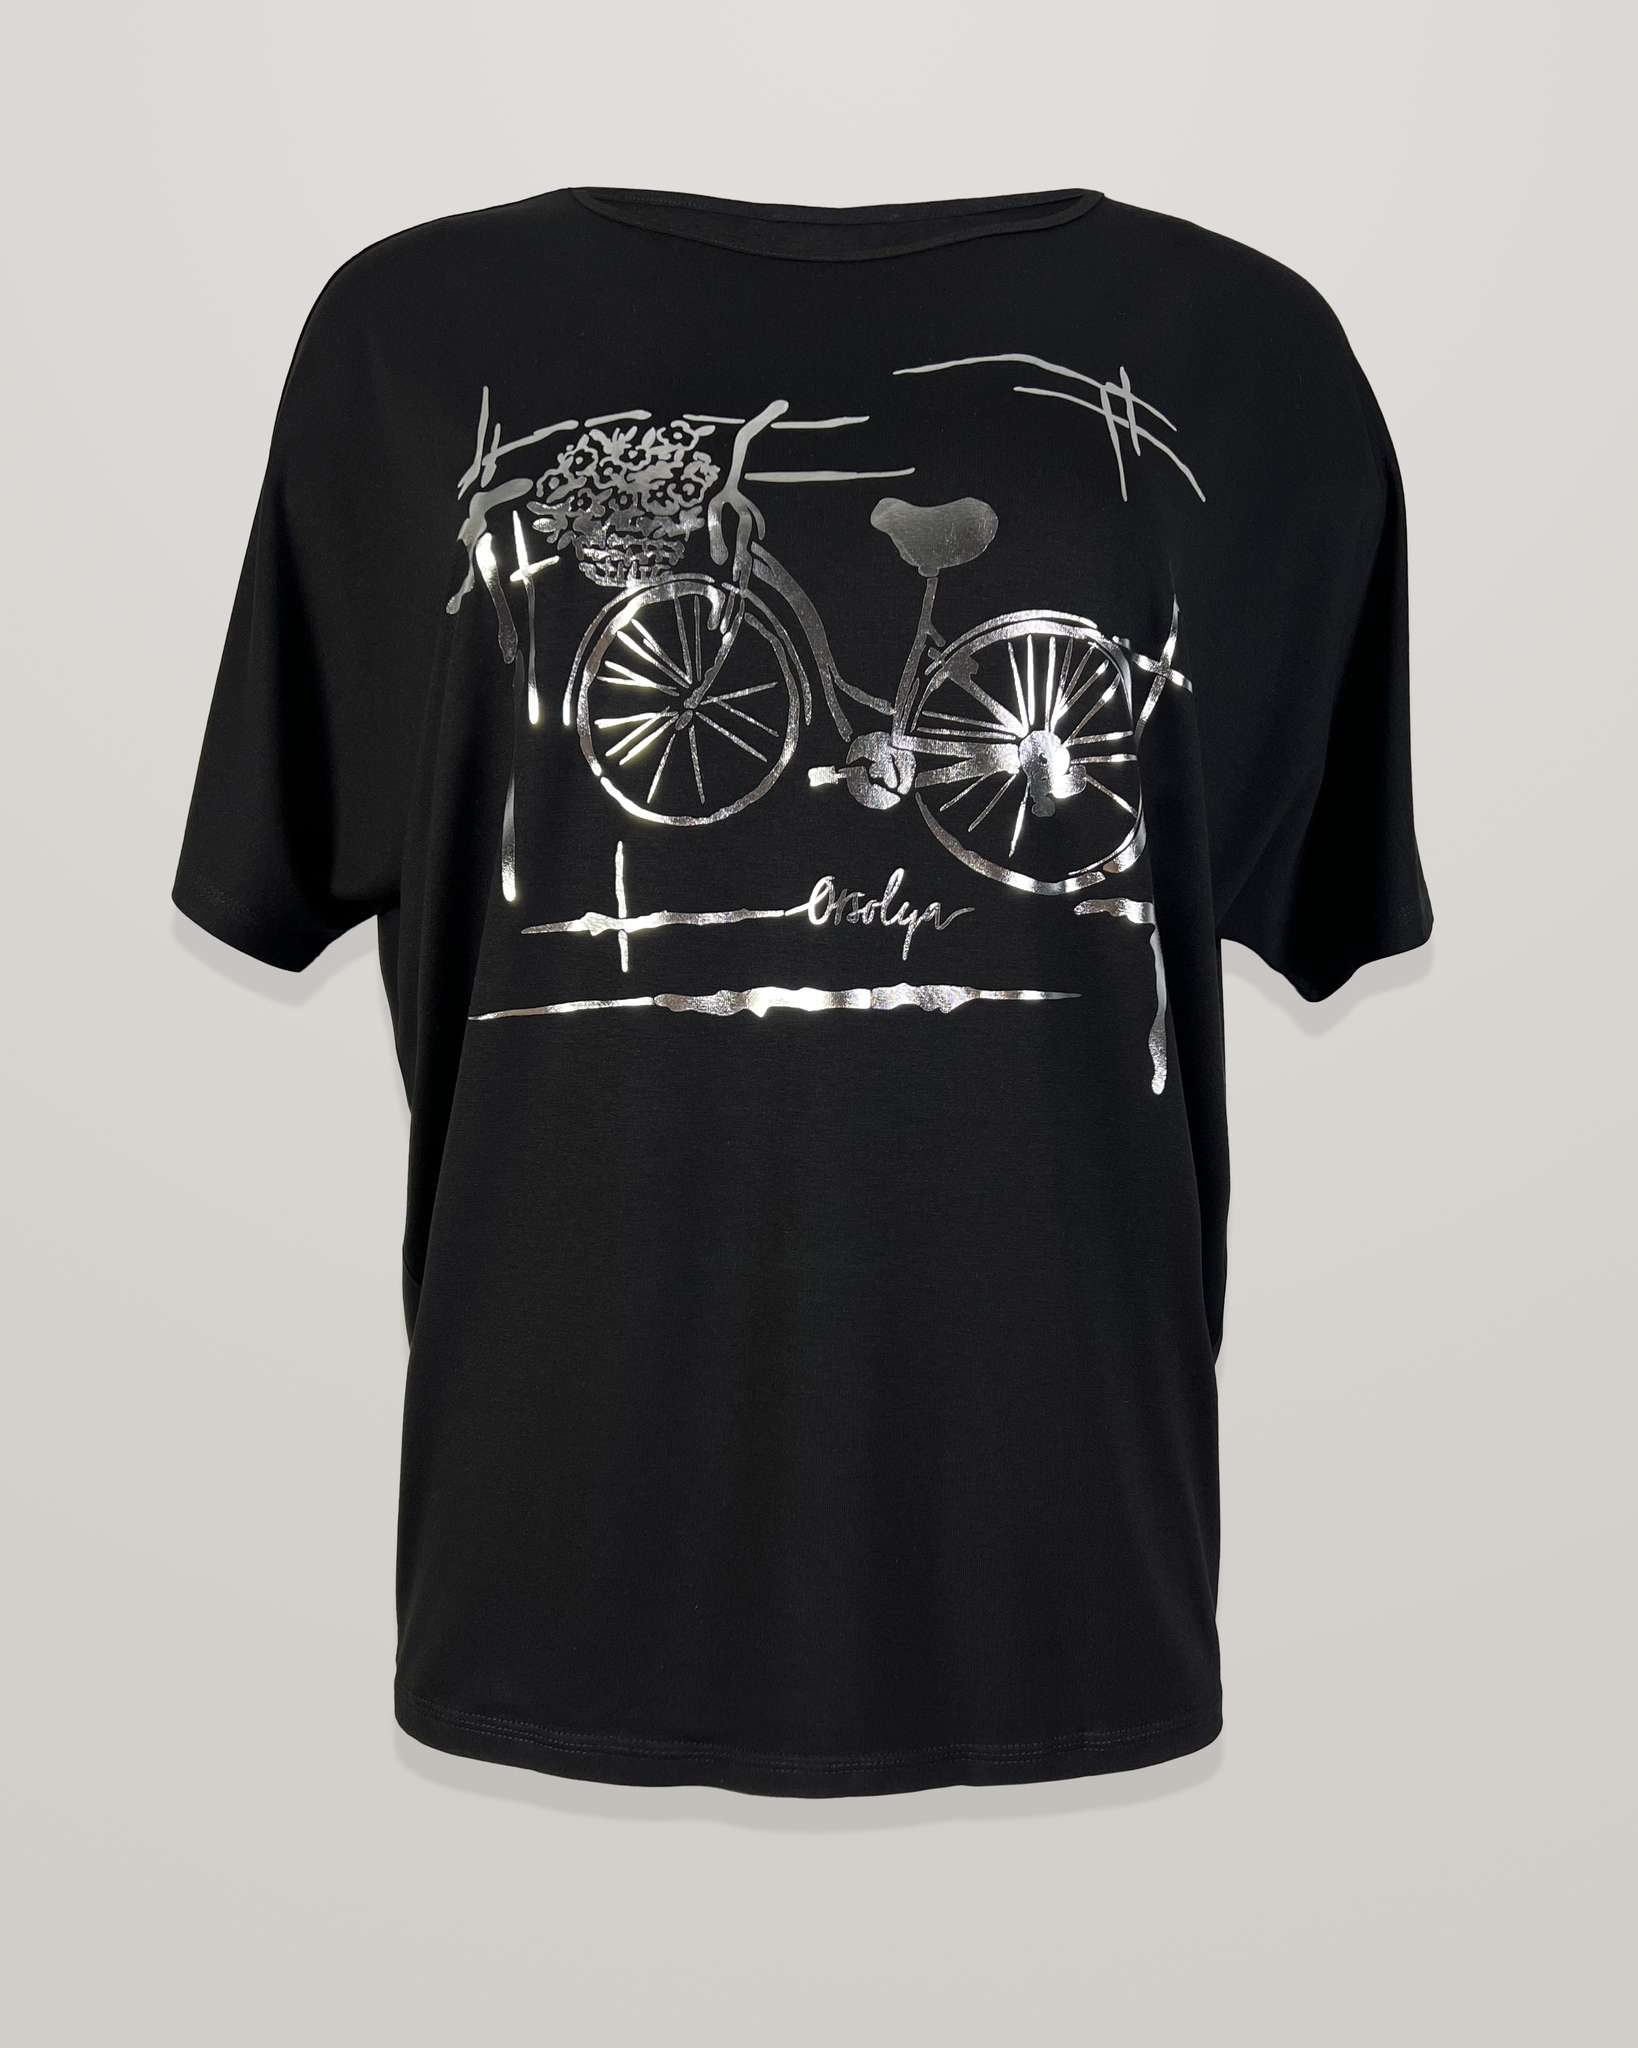 Блузка Orsolya 7741 велосипед к/р (чёрный цвет)